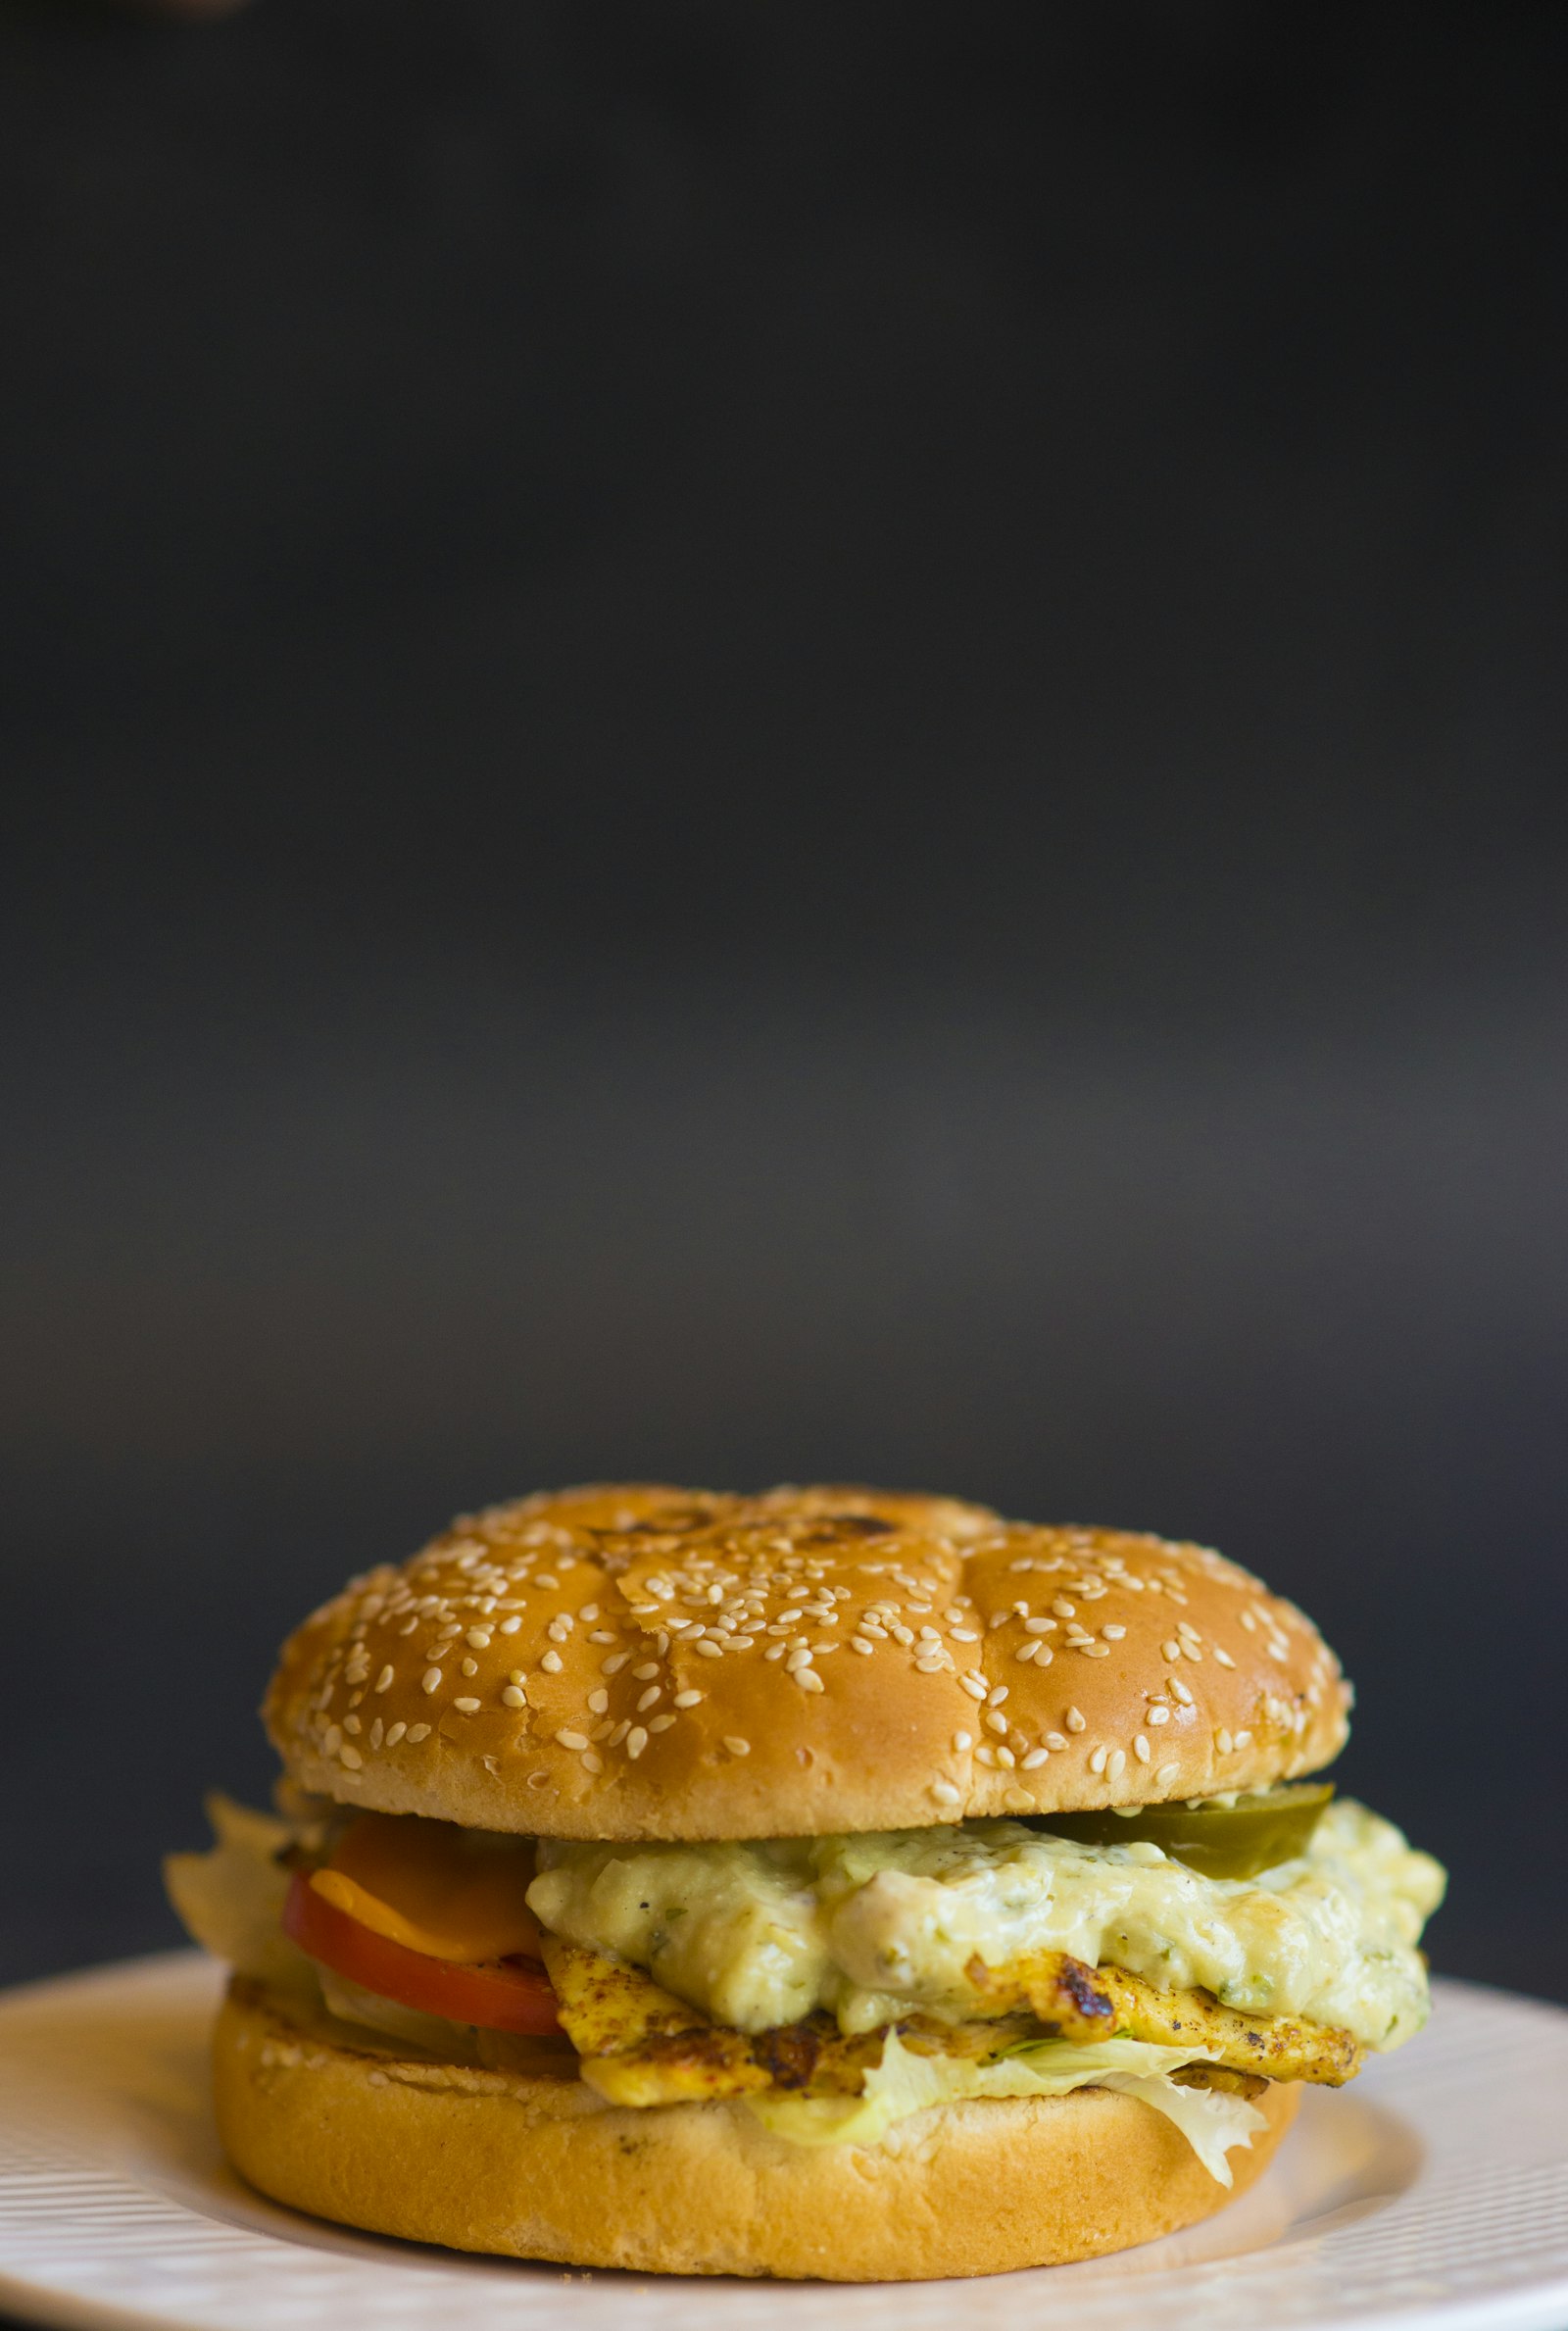 Nikon AF-S Nikkor 85mm F1.8G sample photo. Egg and tomato burger photography